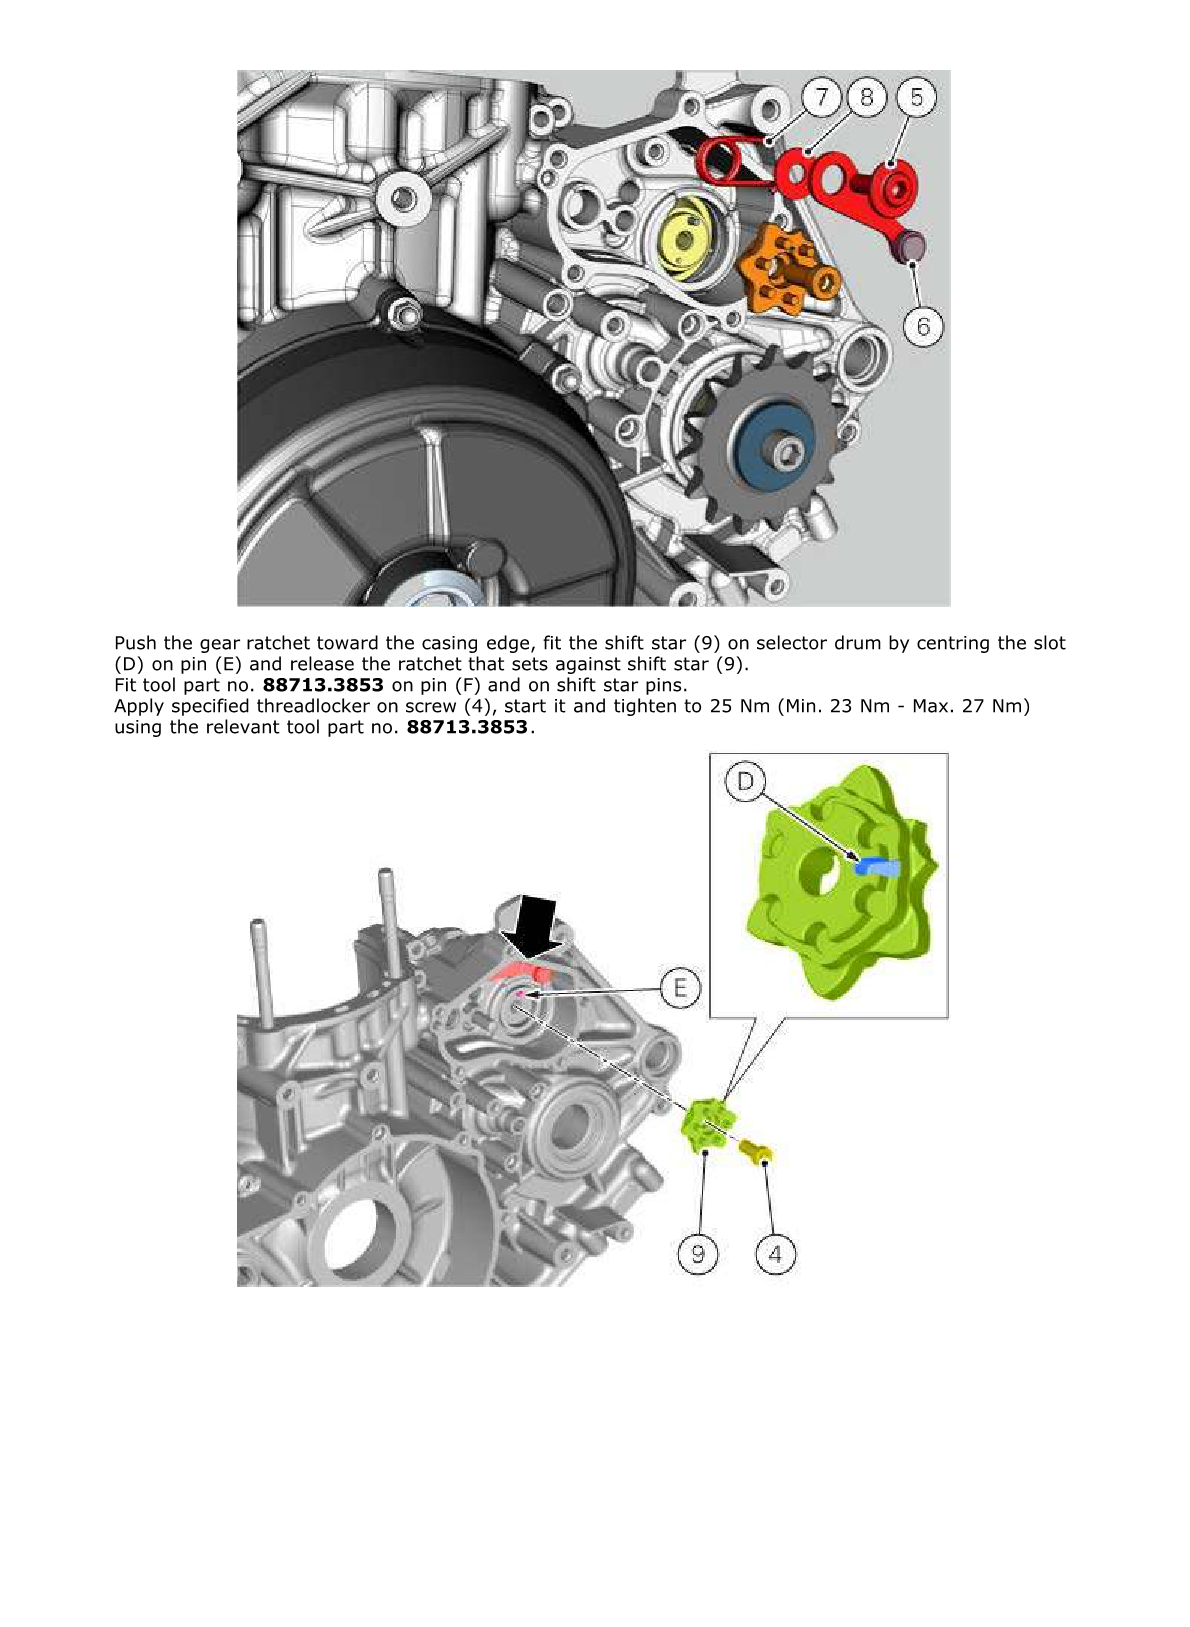 2012-2014 Ducati Panigale S 1199 Twin Manual